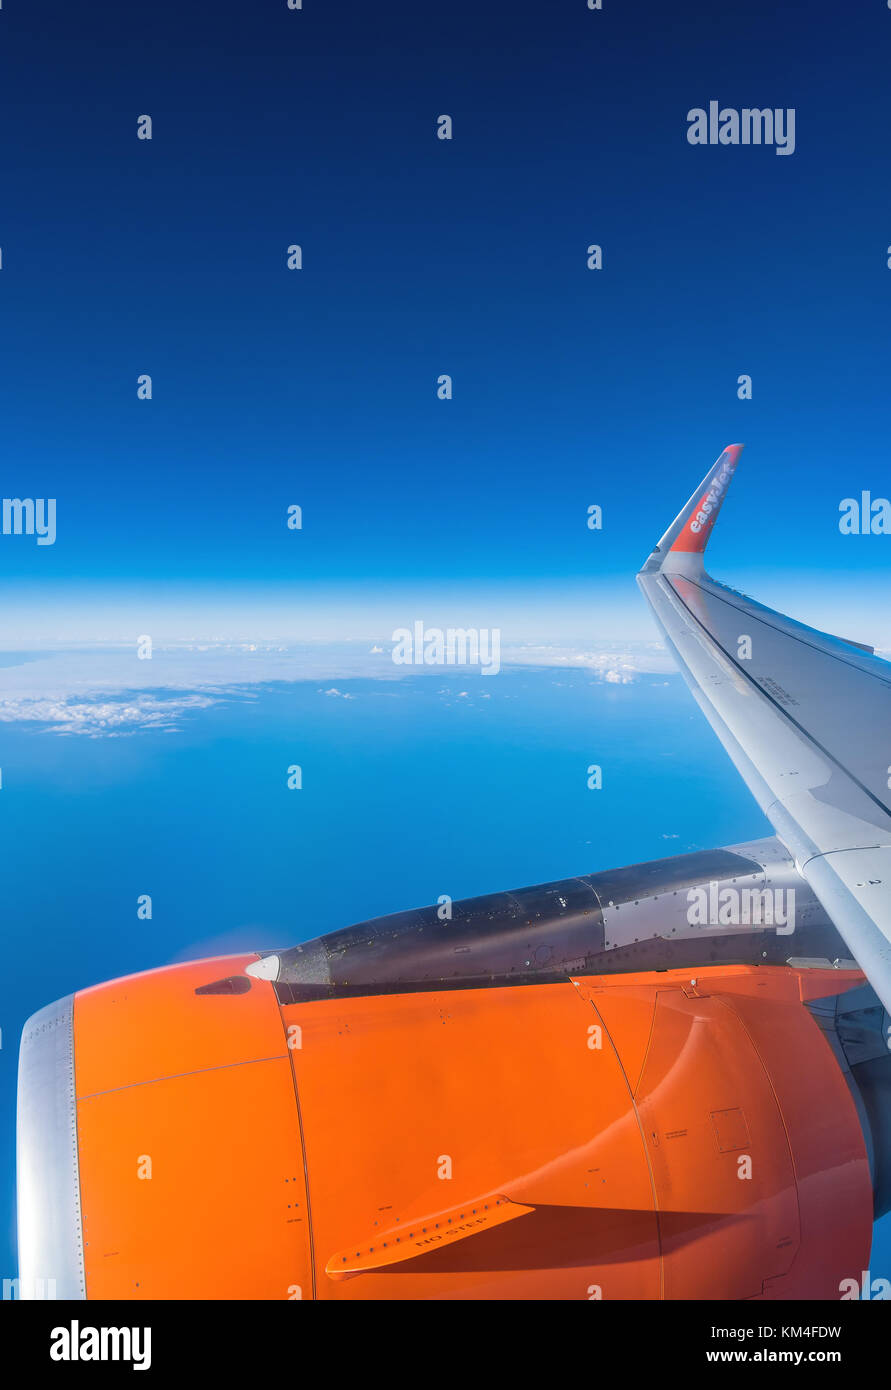 Lanzarote, Espagne - 20 décembre 2016 : easyJet logo sur l'aile d'avion en vol au-dessus de l'océan Atlantique. easyJet est une compagnie aérienne à bas coûts britannique Banque D'Images